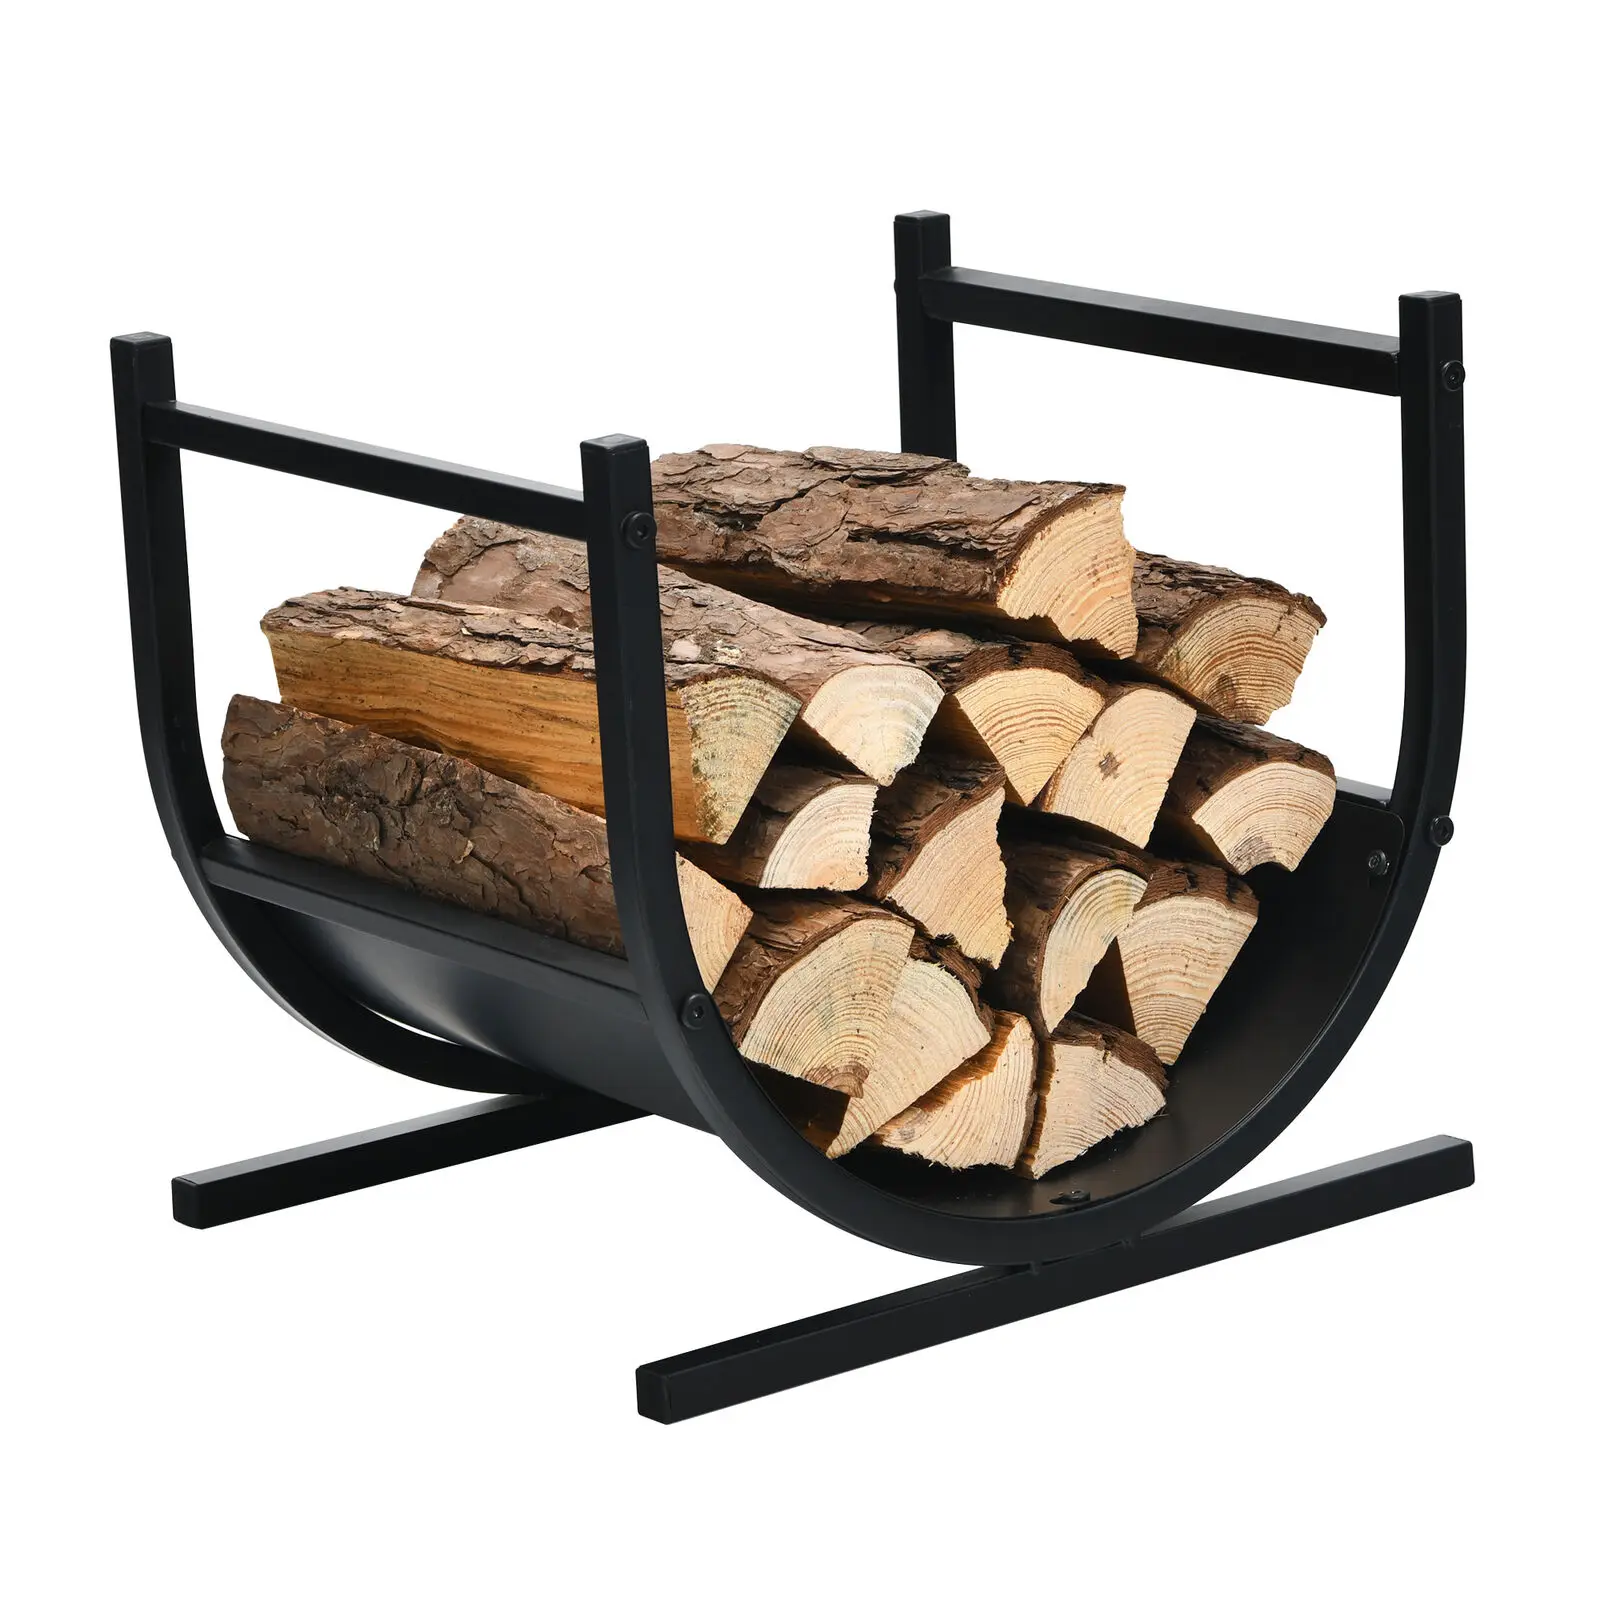 

Costway 17” U-Shaped Firewood Rack Steel Fireplace Wood Storage Log Rack Holder OP70817